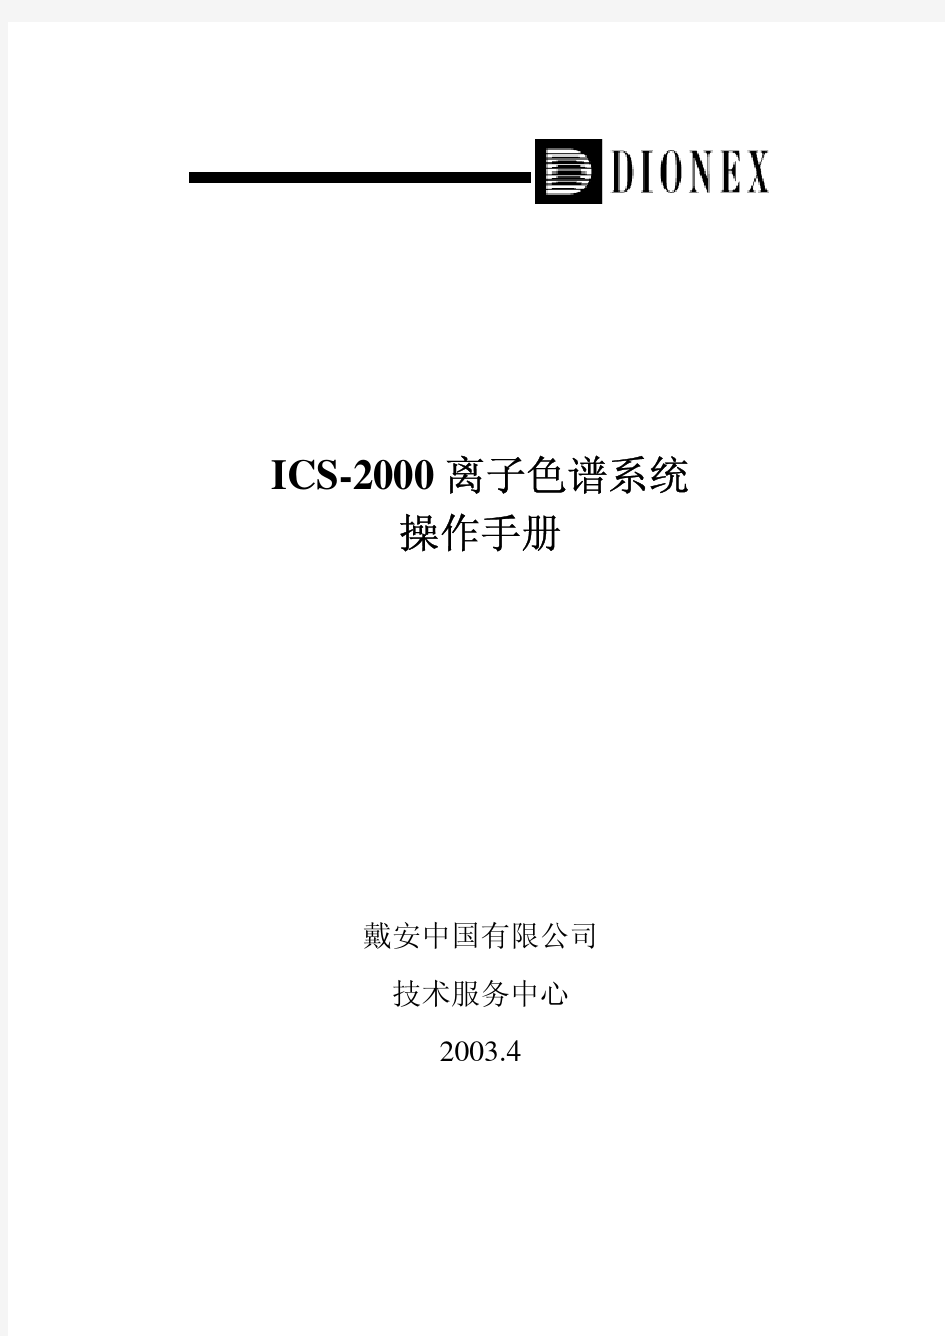 ICS-2000戴安离子色谱系统操作手册-中文